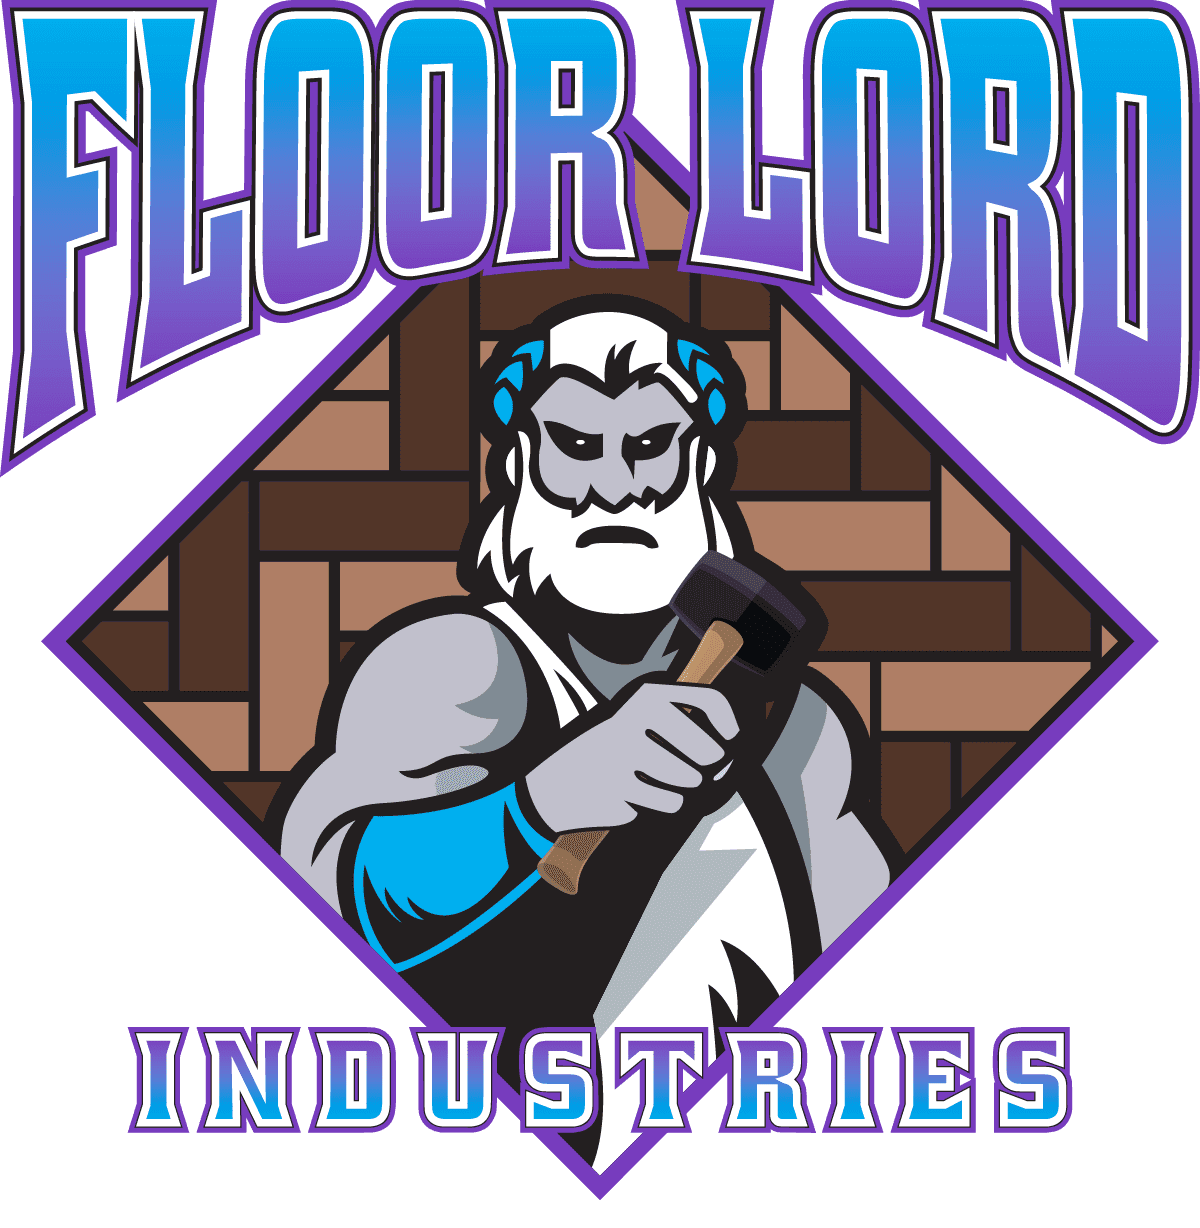 Floor Lord Industries